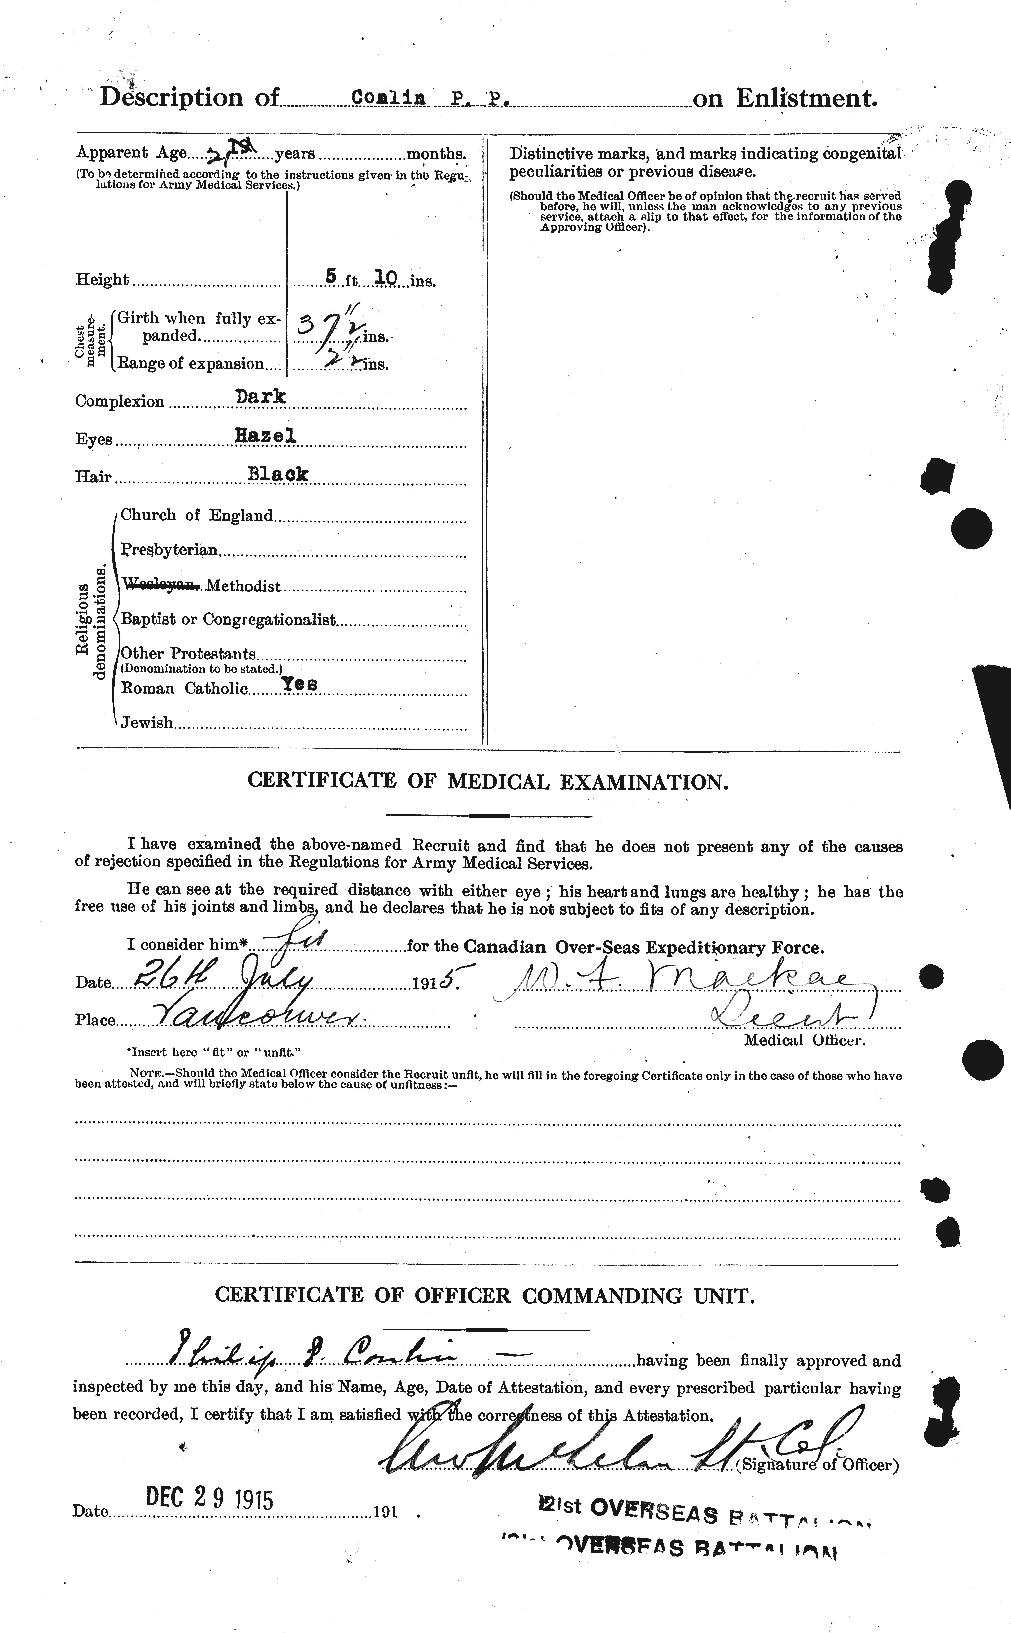 Dossiers du Personnel de la Première Guerre mondiale - CEC 067756b